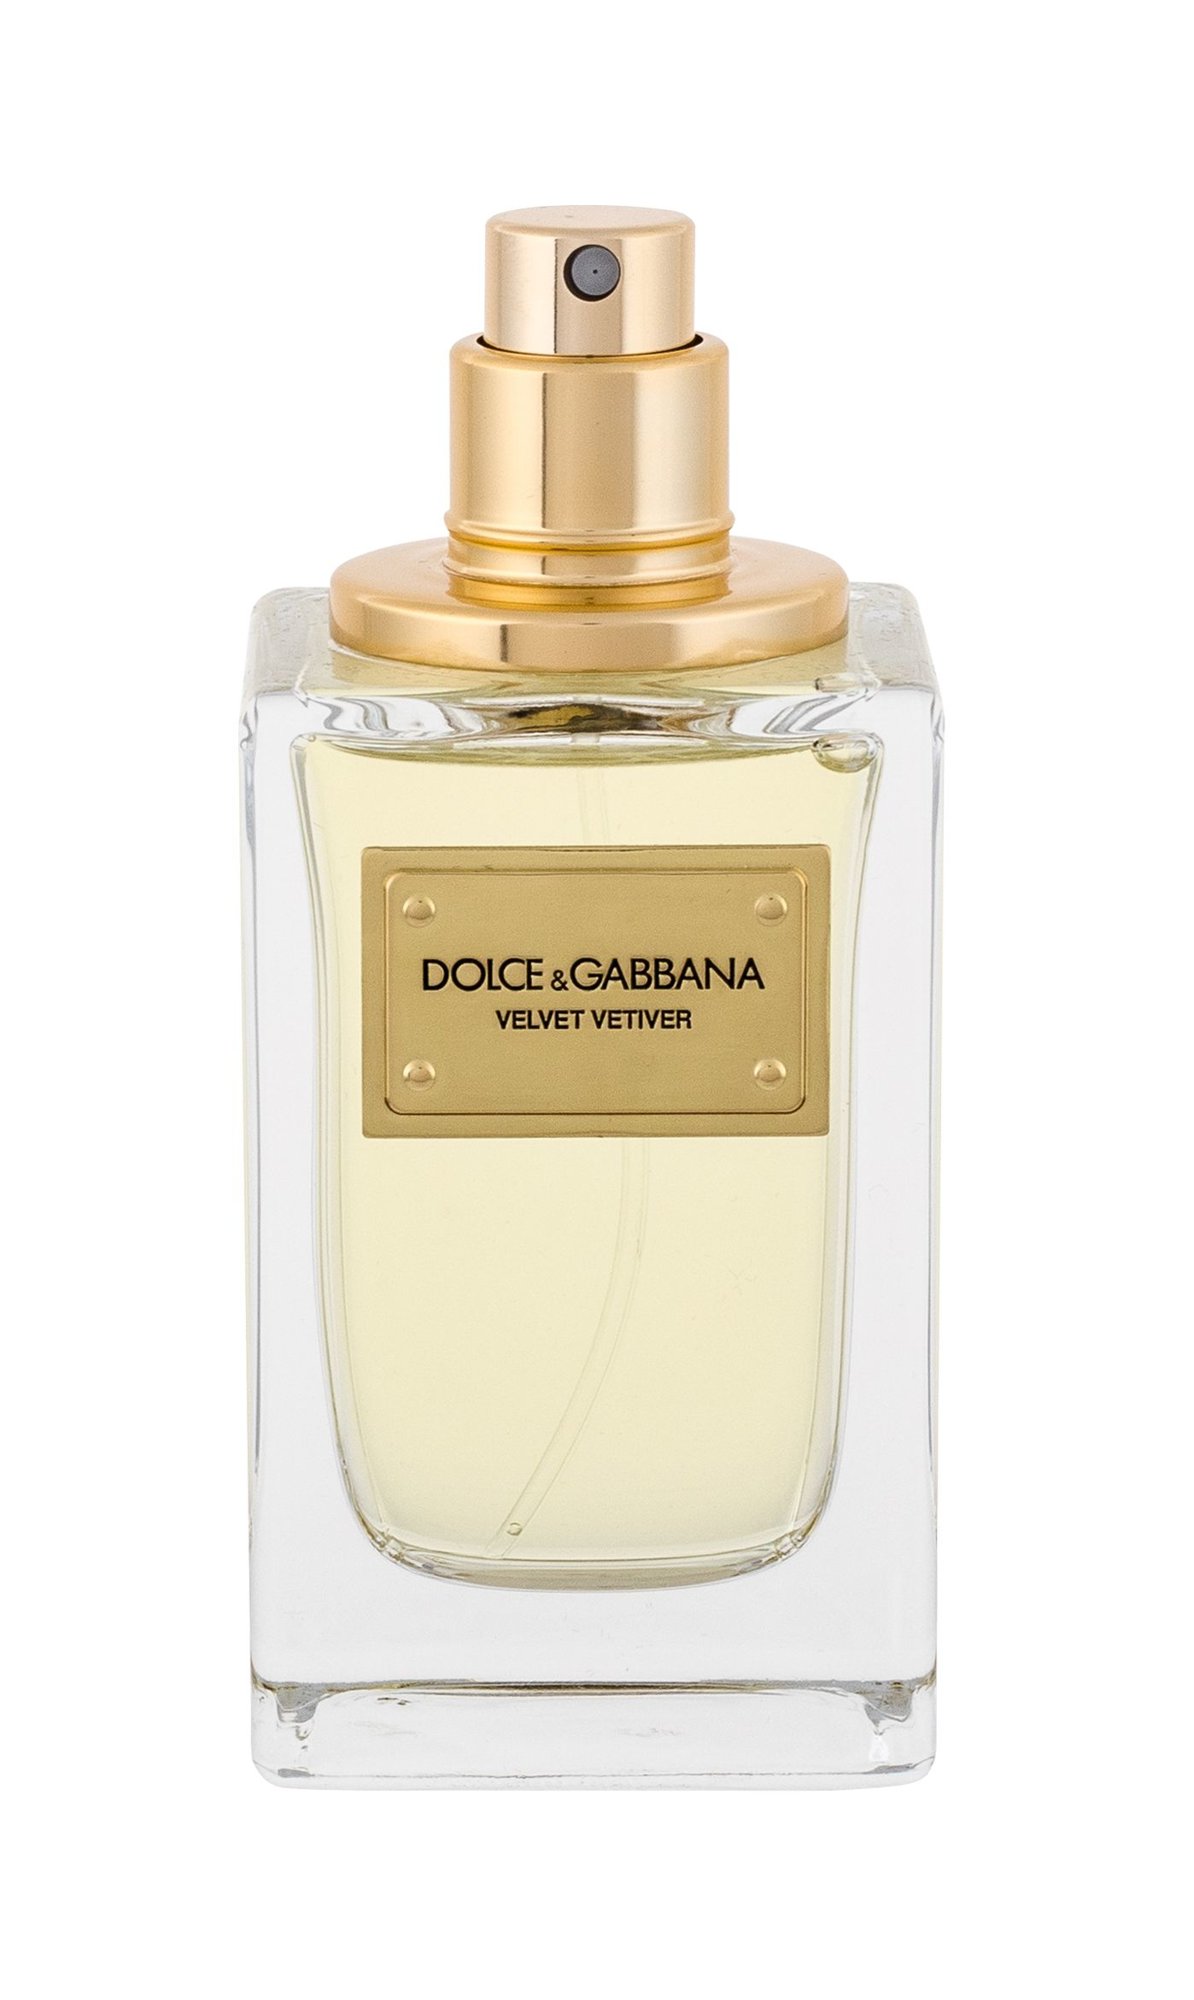 Dolce&Gabbana Velvet Vetiver